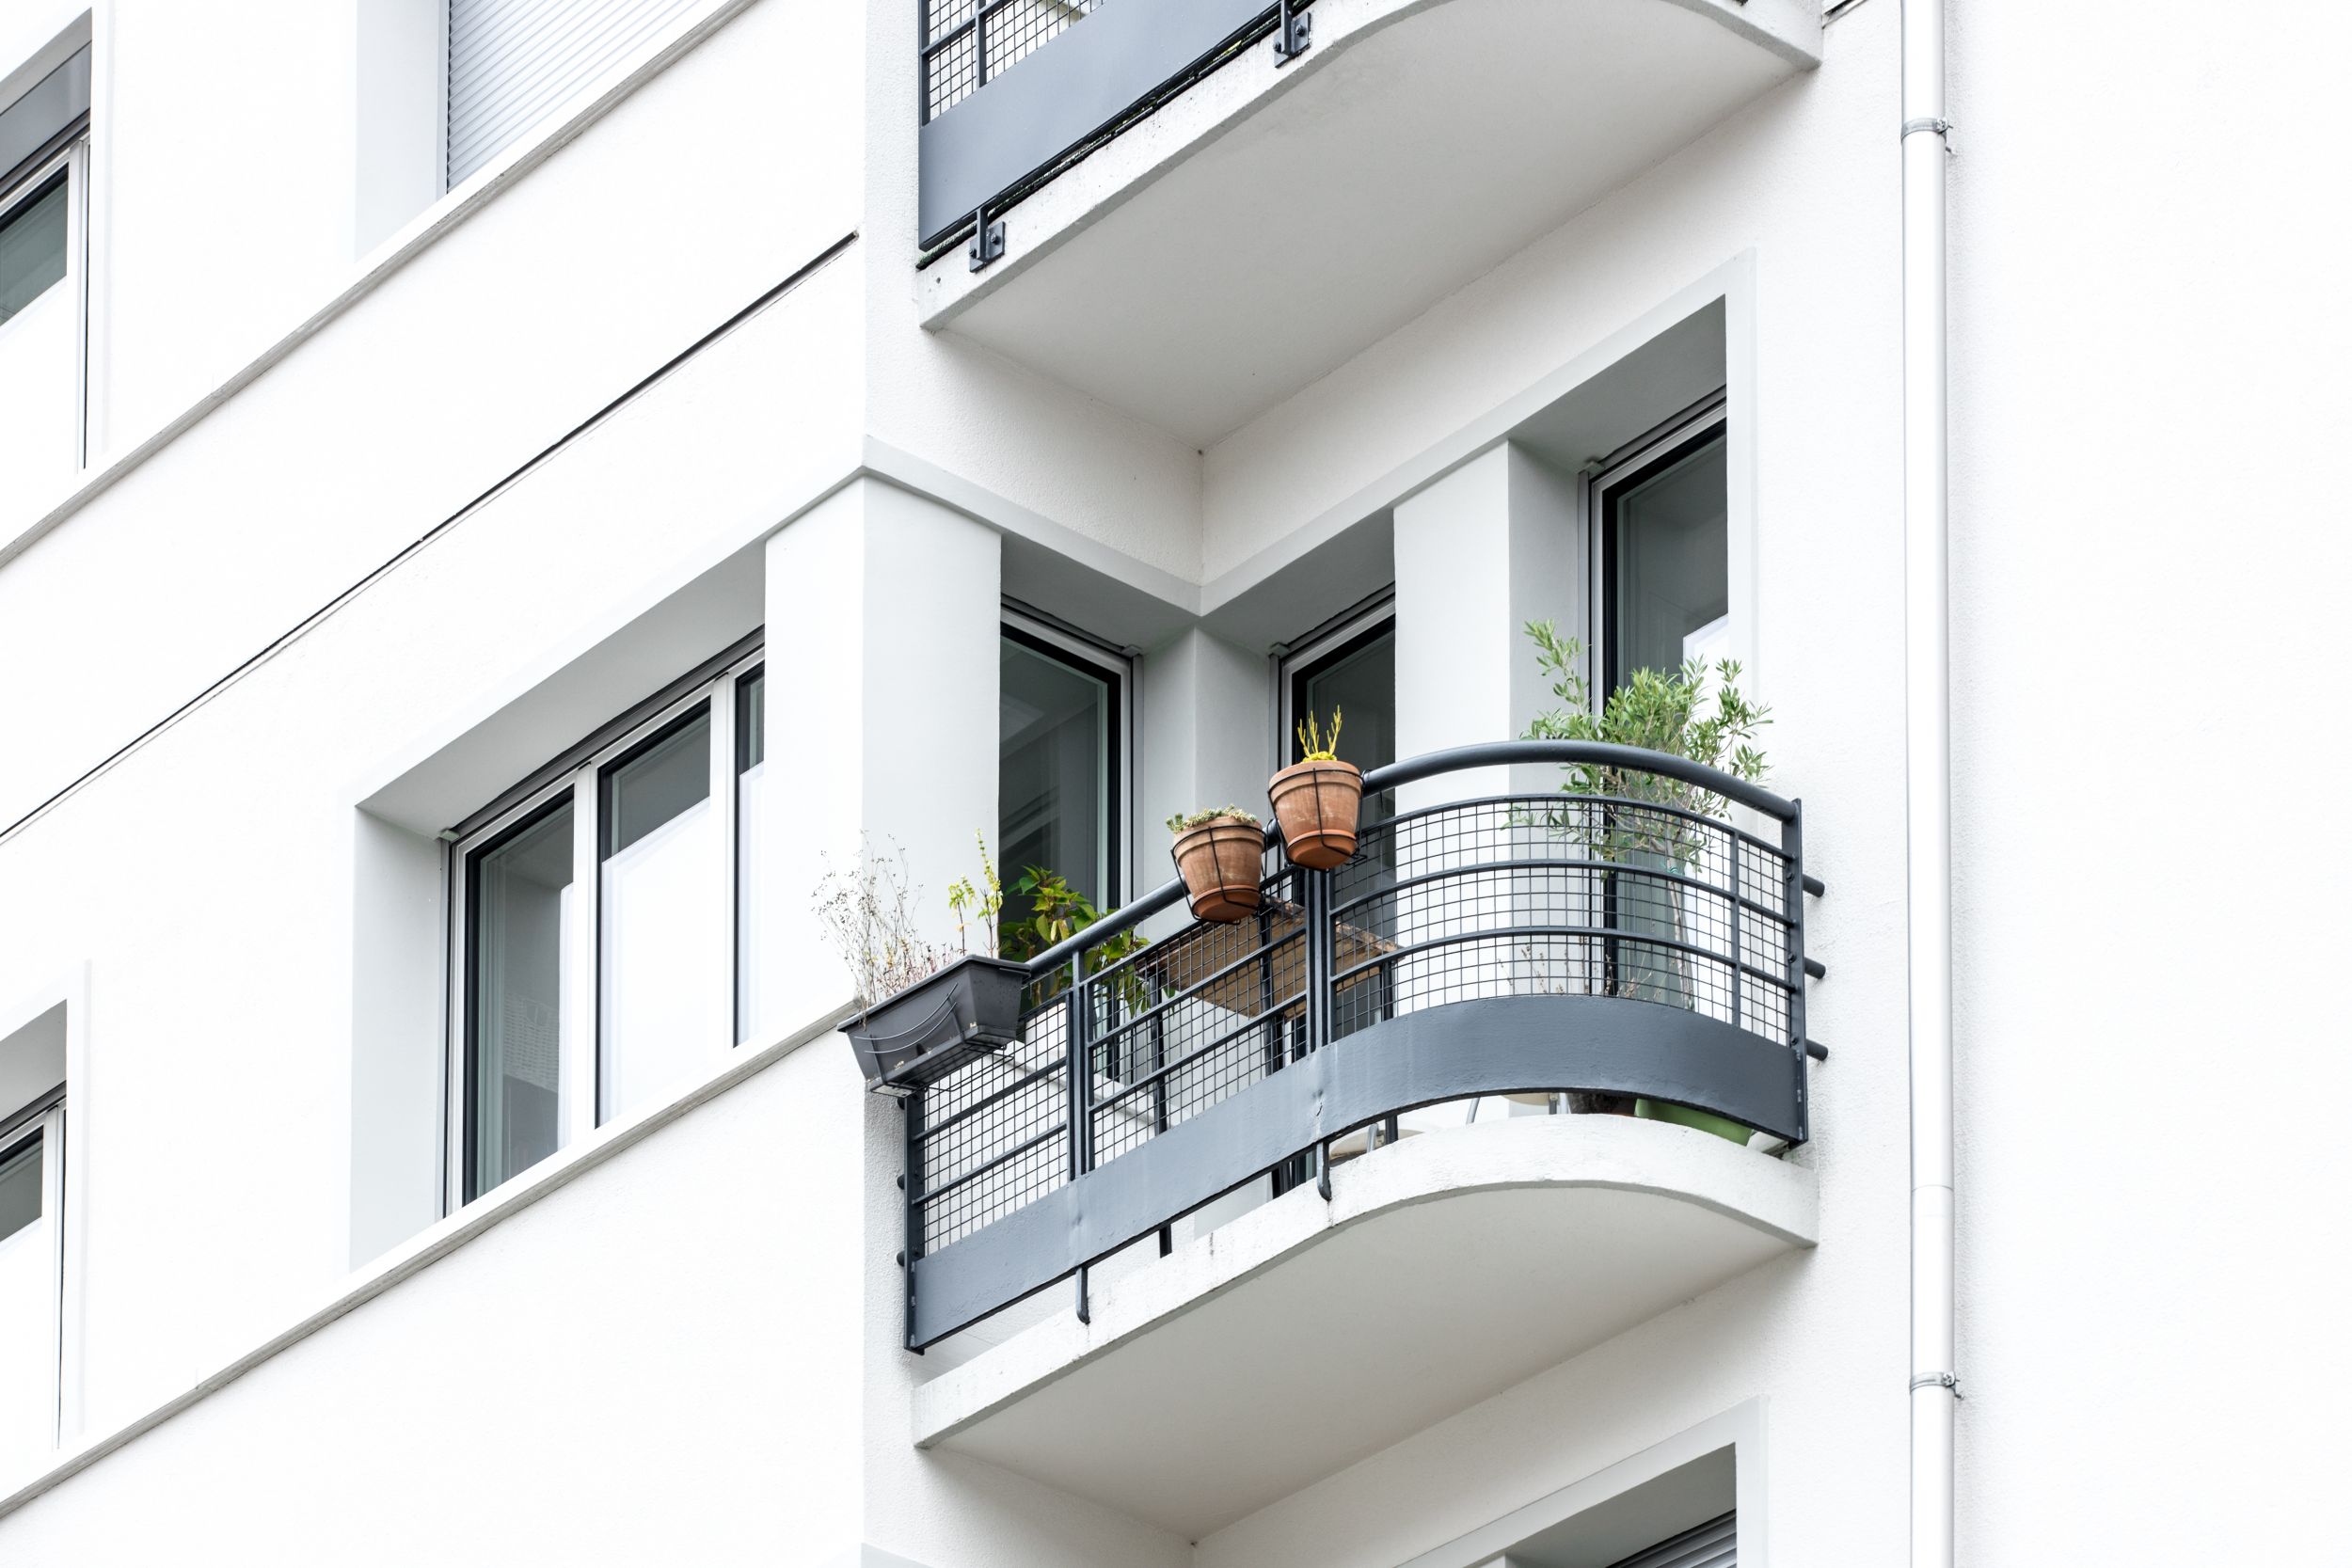 arento ag_nachhaltige architektur_Aufstockung Modernisierung MFH Stutz_Fassade Balkon.jpg